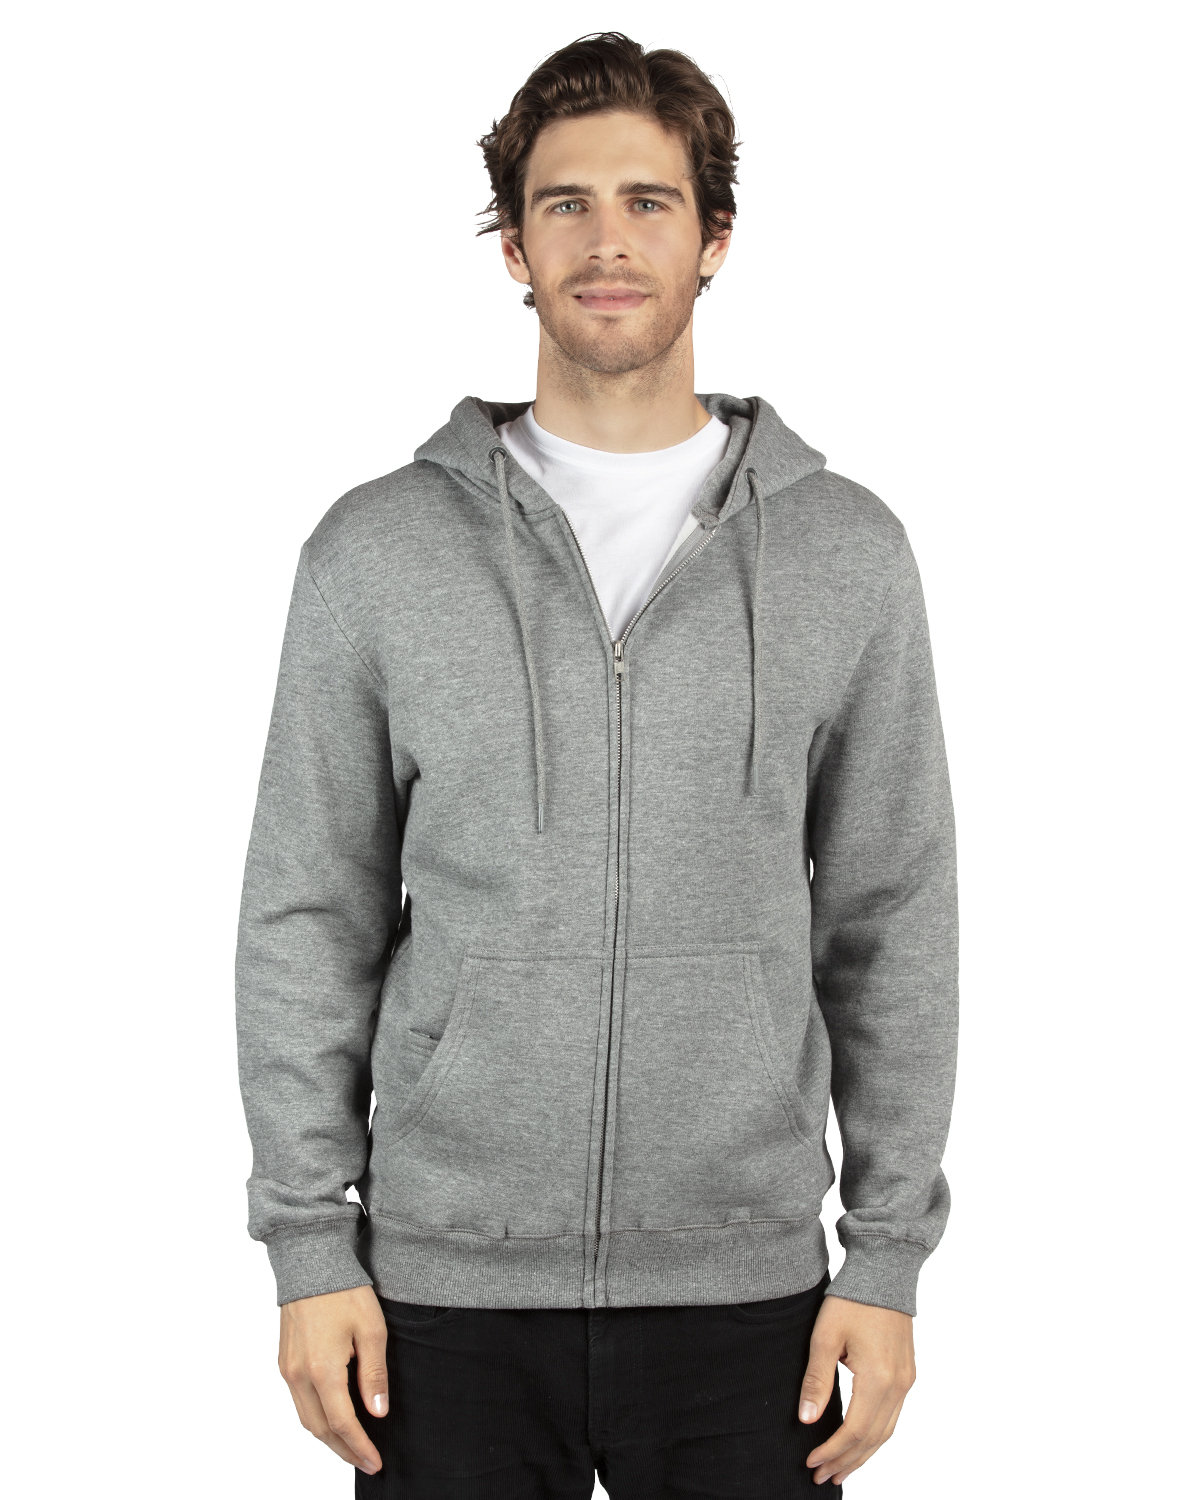 Threadfast Unisex Ultimate Fleece Full-Zip Hooded Sweatshirt HEATHER GREY 